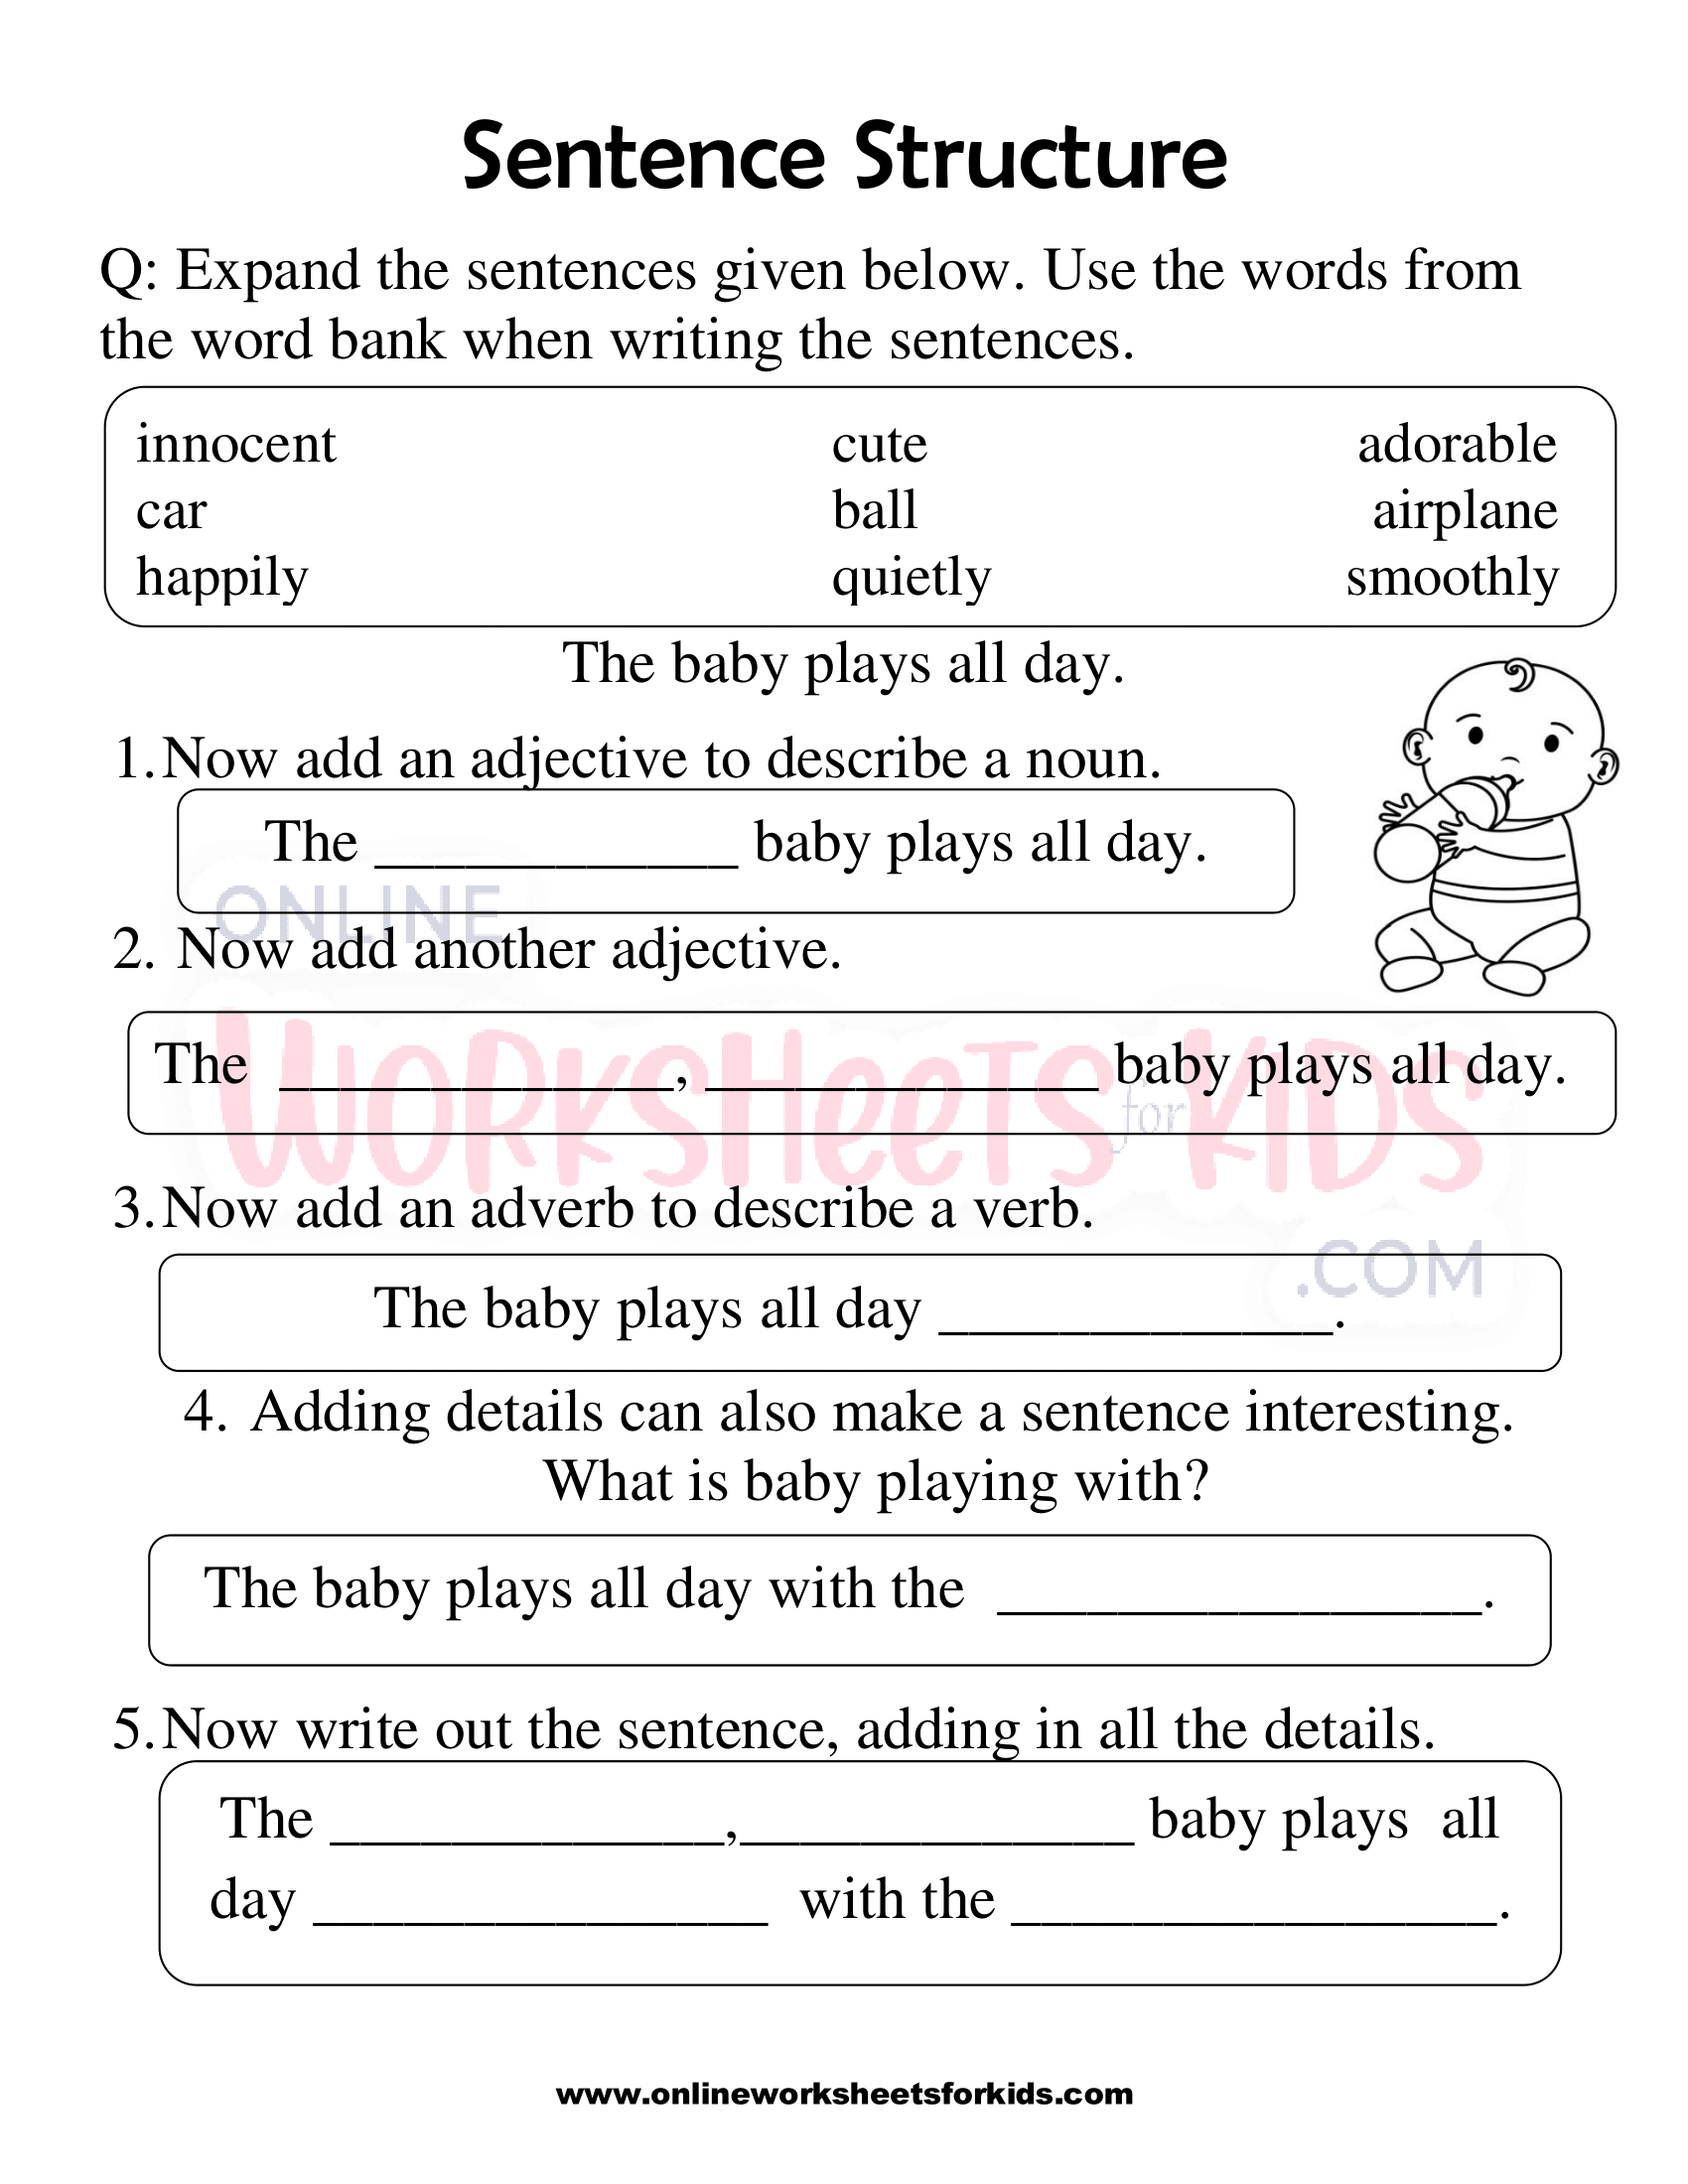 Sentence Structure Worksheets 1st Grade 10 1557